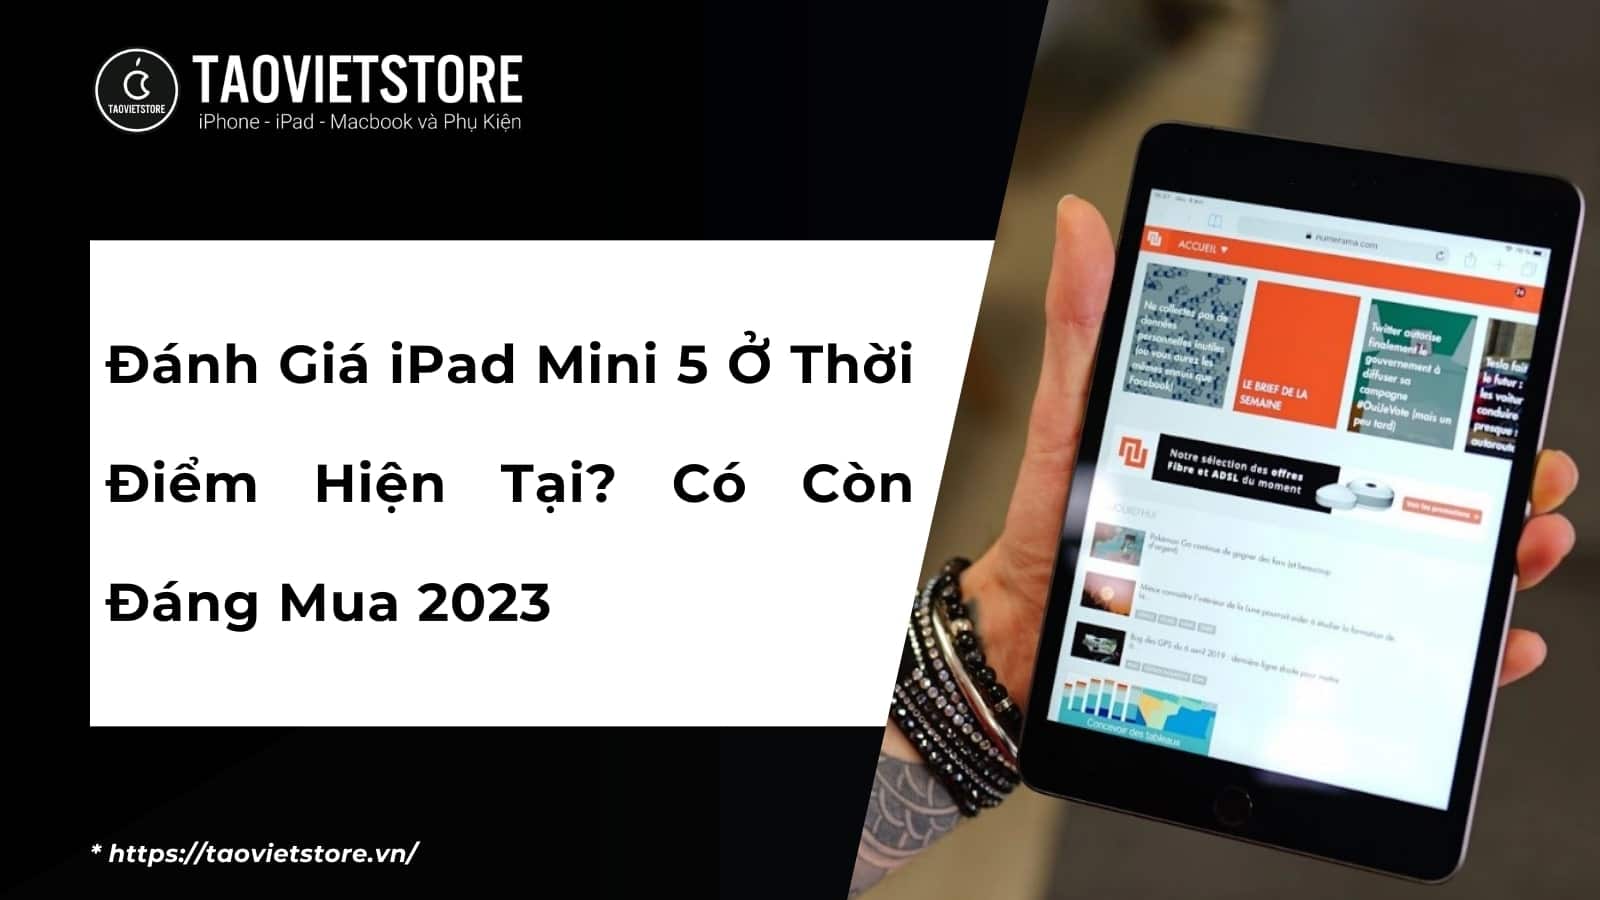 Đánh Giá iPad Mini 5 Ở Thời Điểm Hiện Tại? Có Còn Đáng Mua 2023